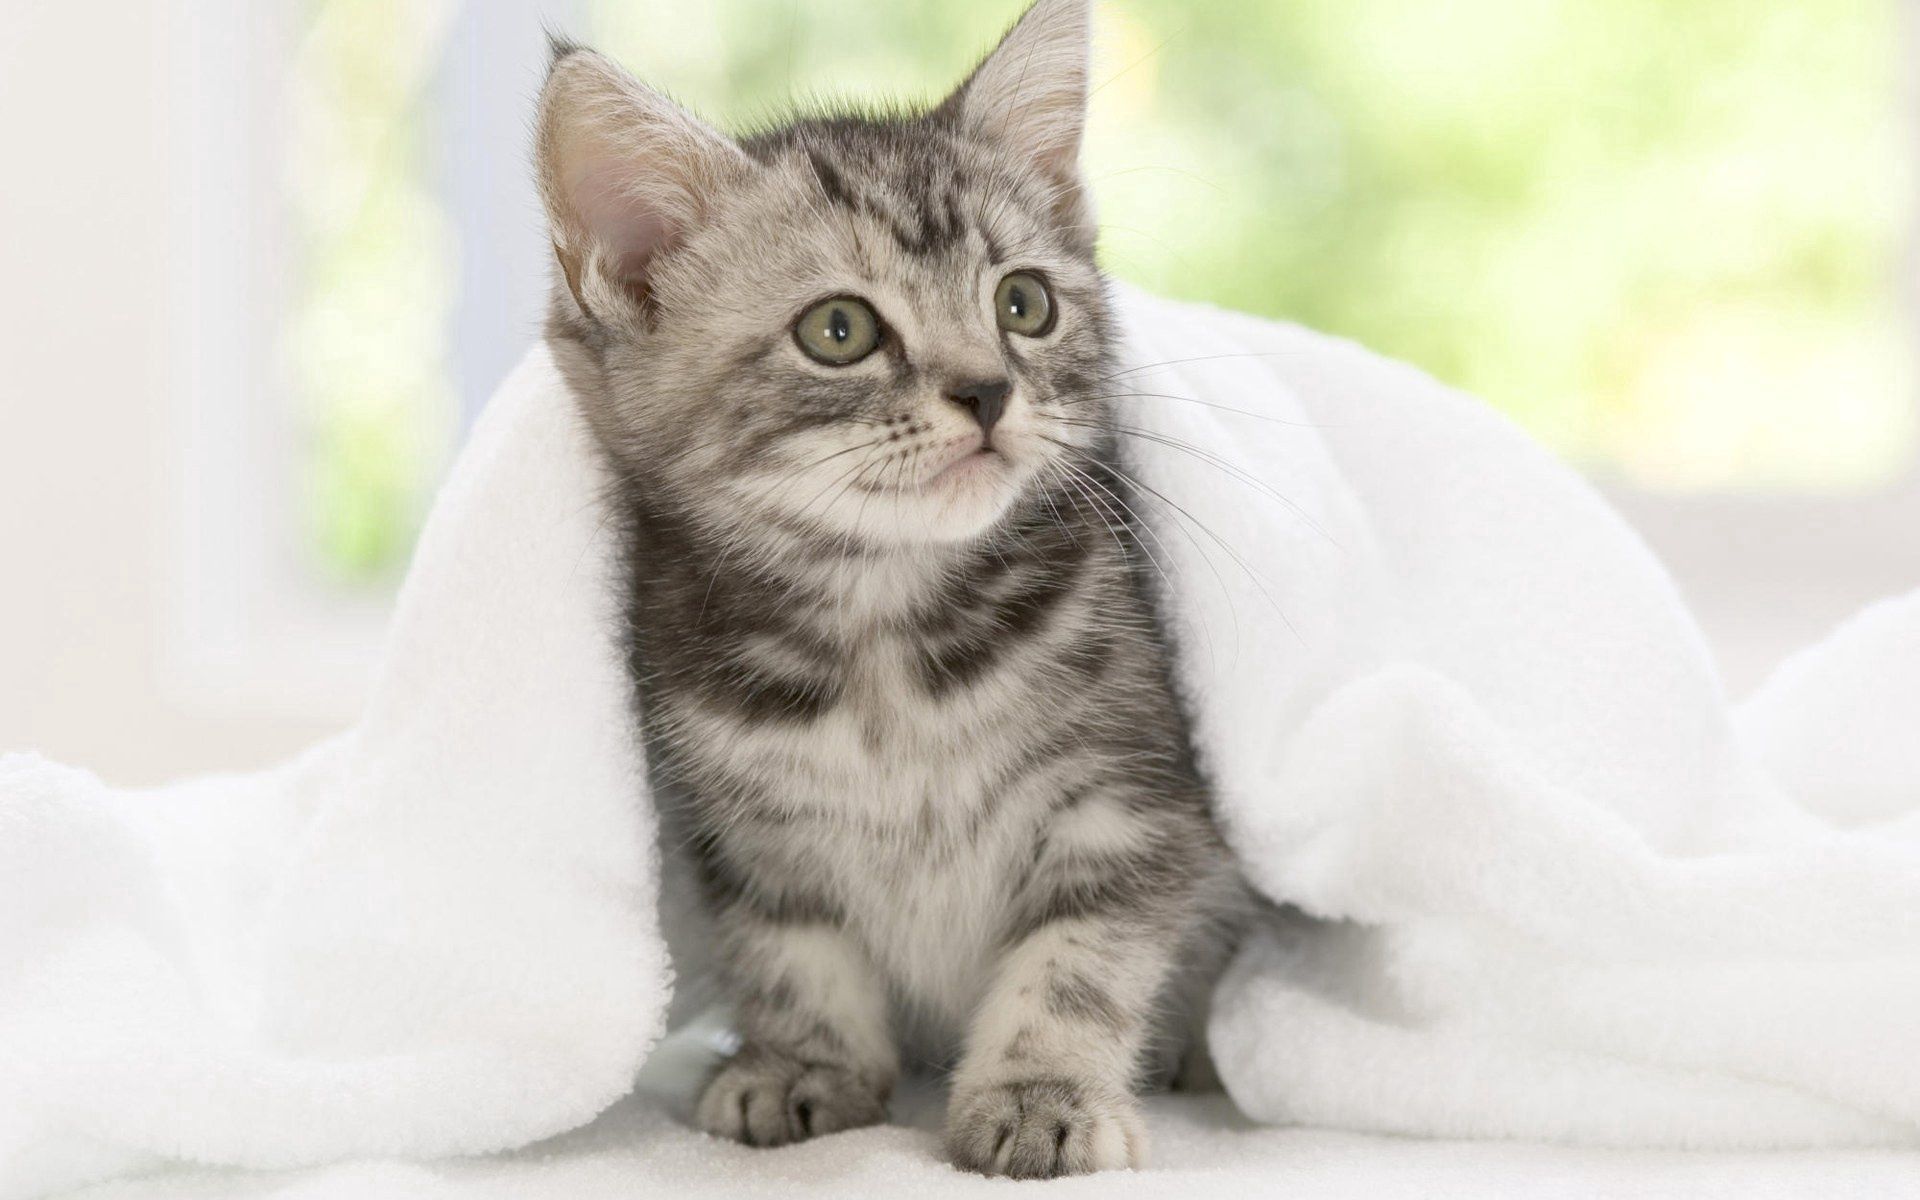 animals, kitty, kitten, sight, opinion, expectation, waiting, blanket